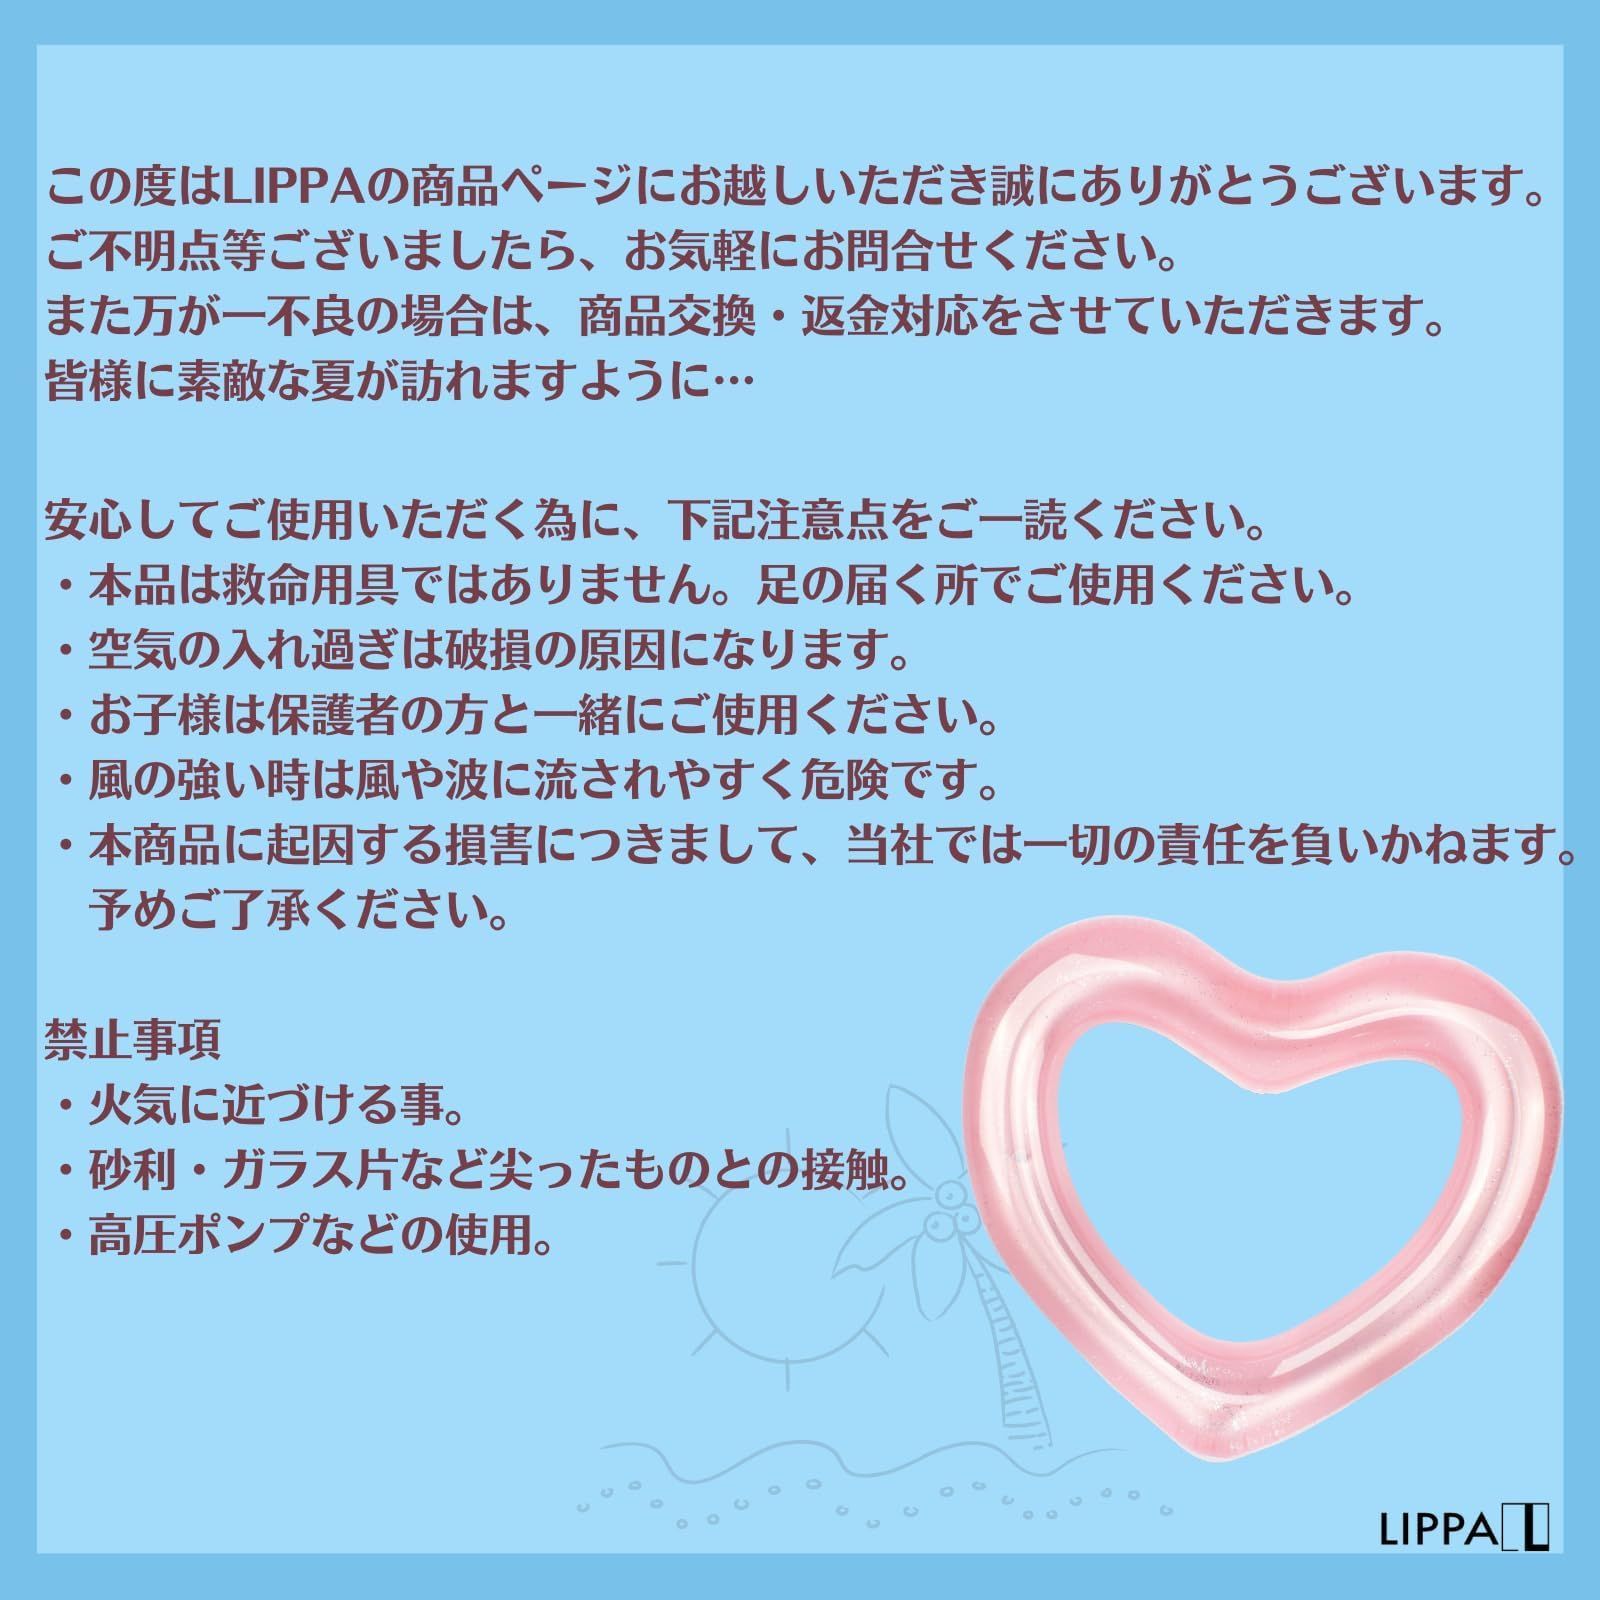 【数量限定】LIPPA 女性が作った日本発ブランド 浮き輪 ハート ピンク 大人